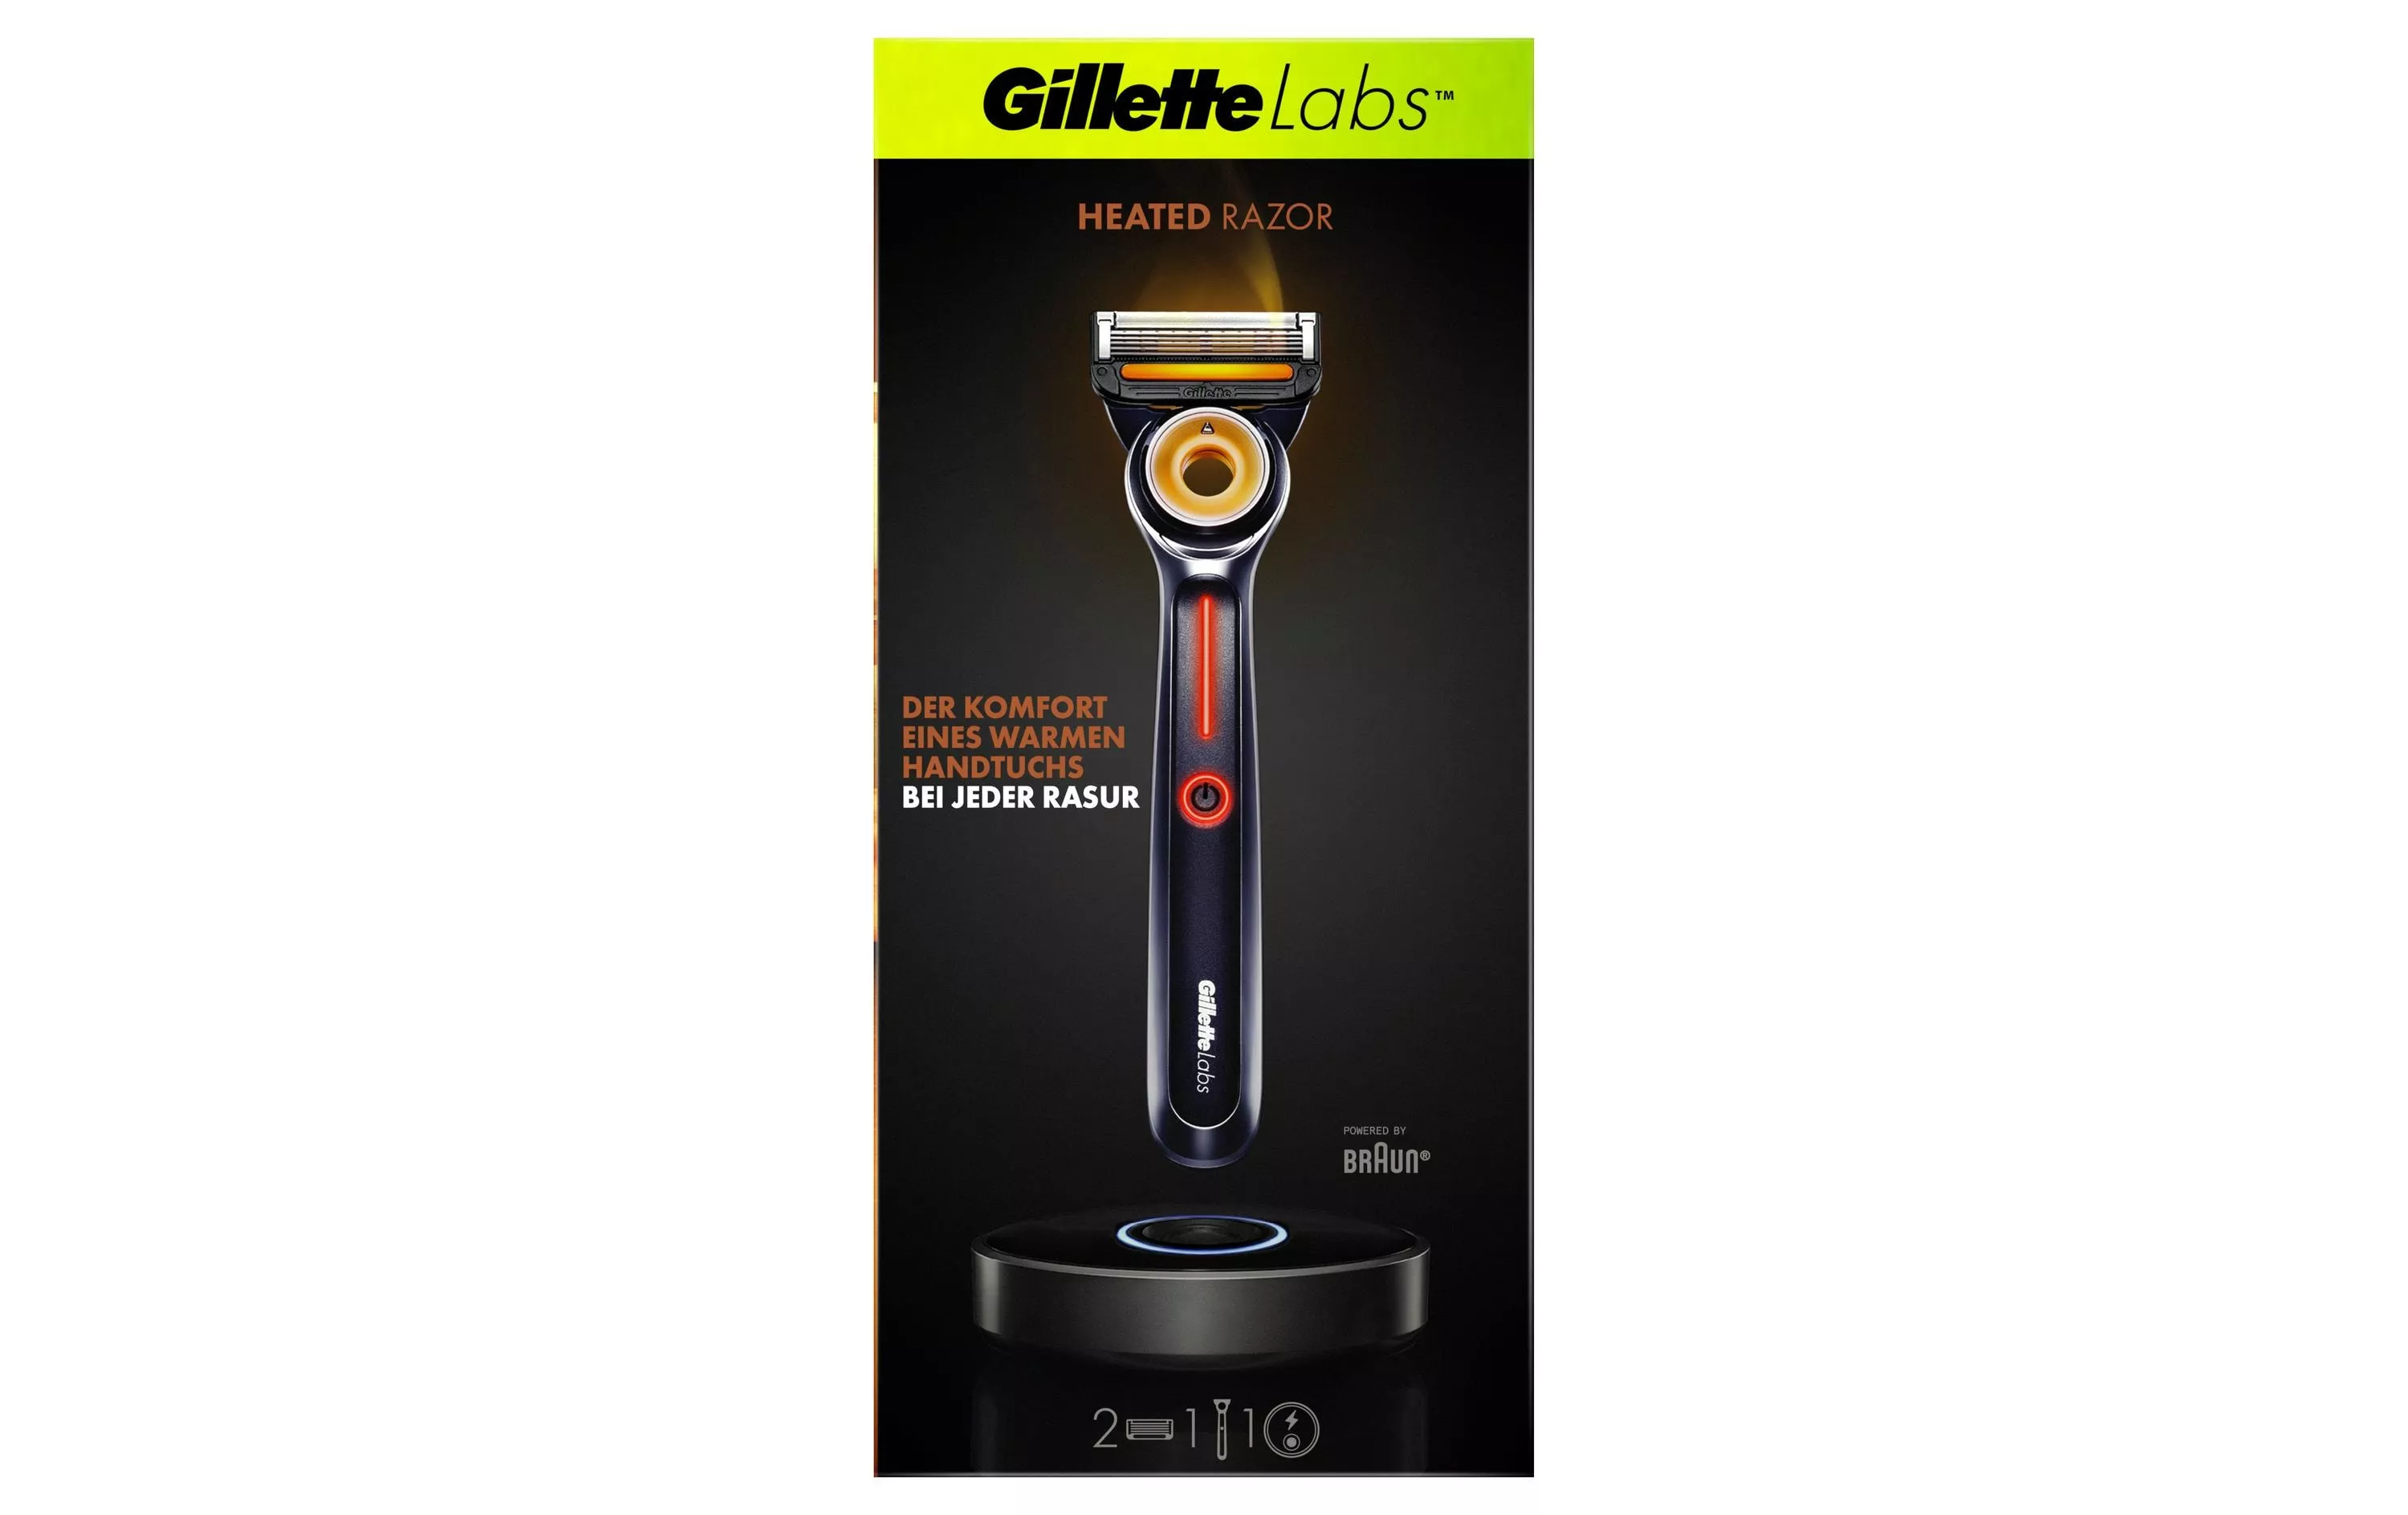 Confezione da viaggio del rasoio riscaldato Gillette Labs